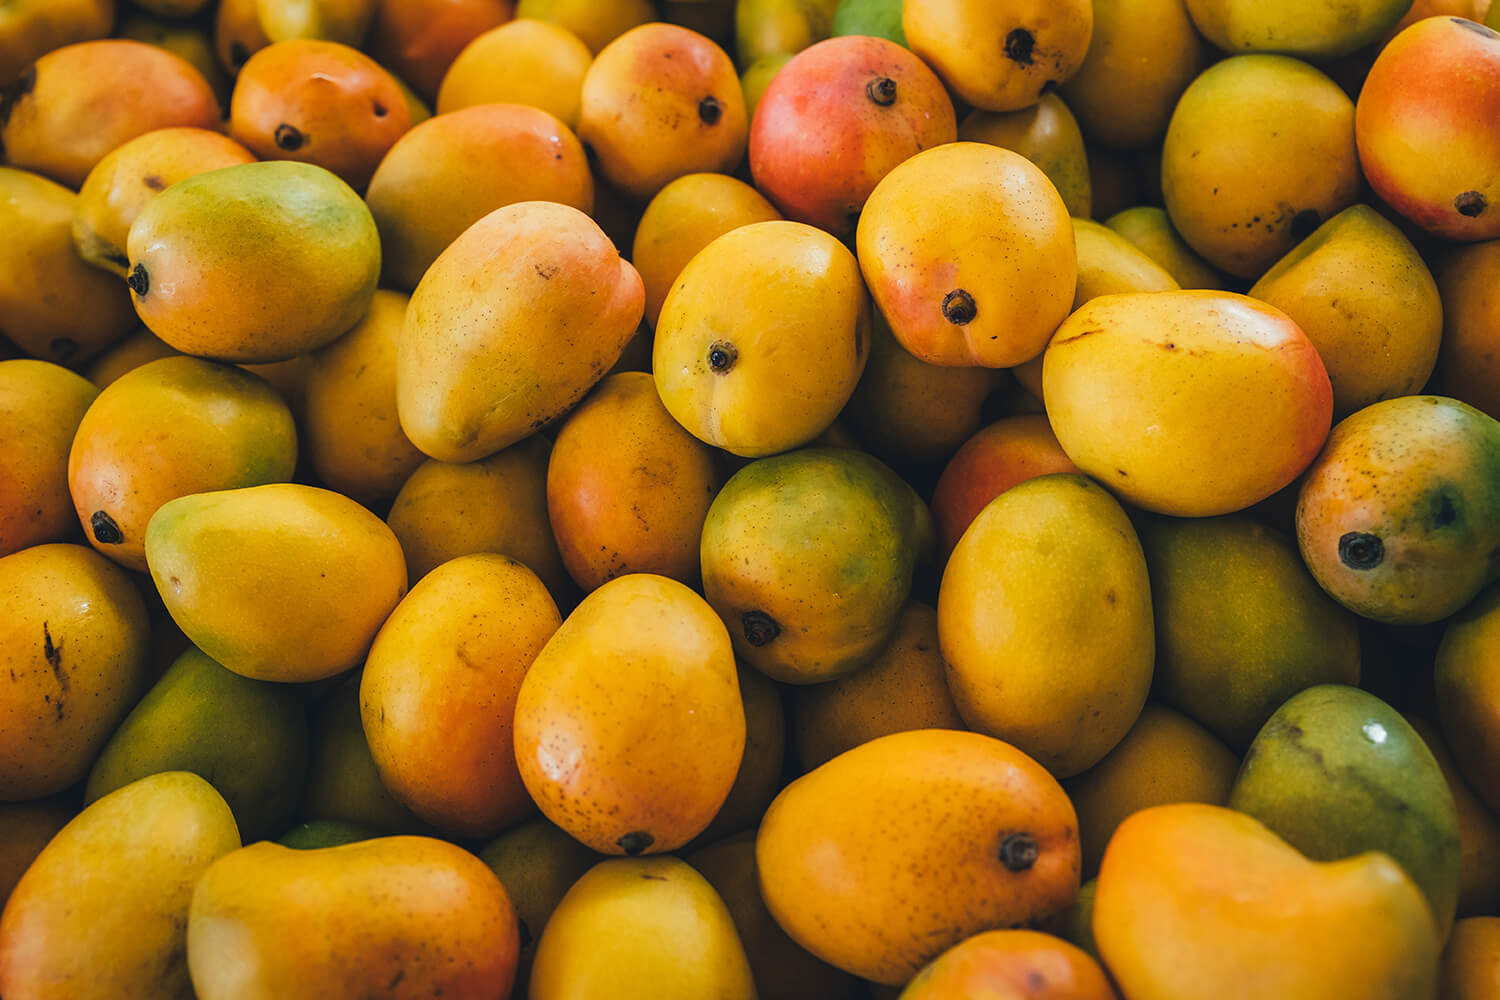 Mangoes at Rusty's Markets